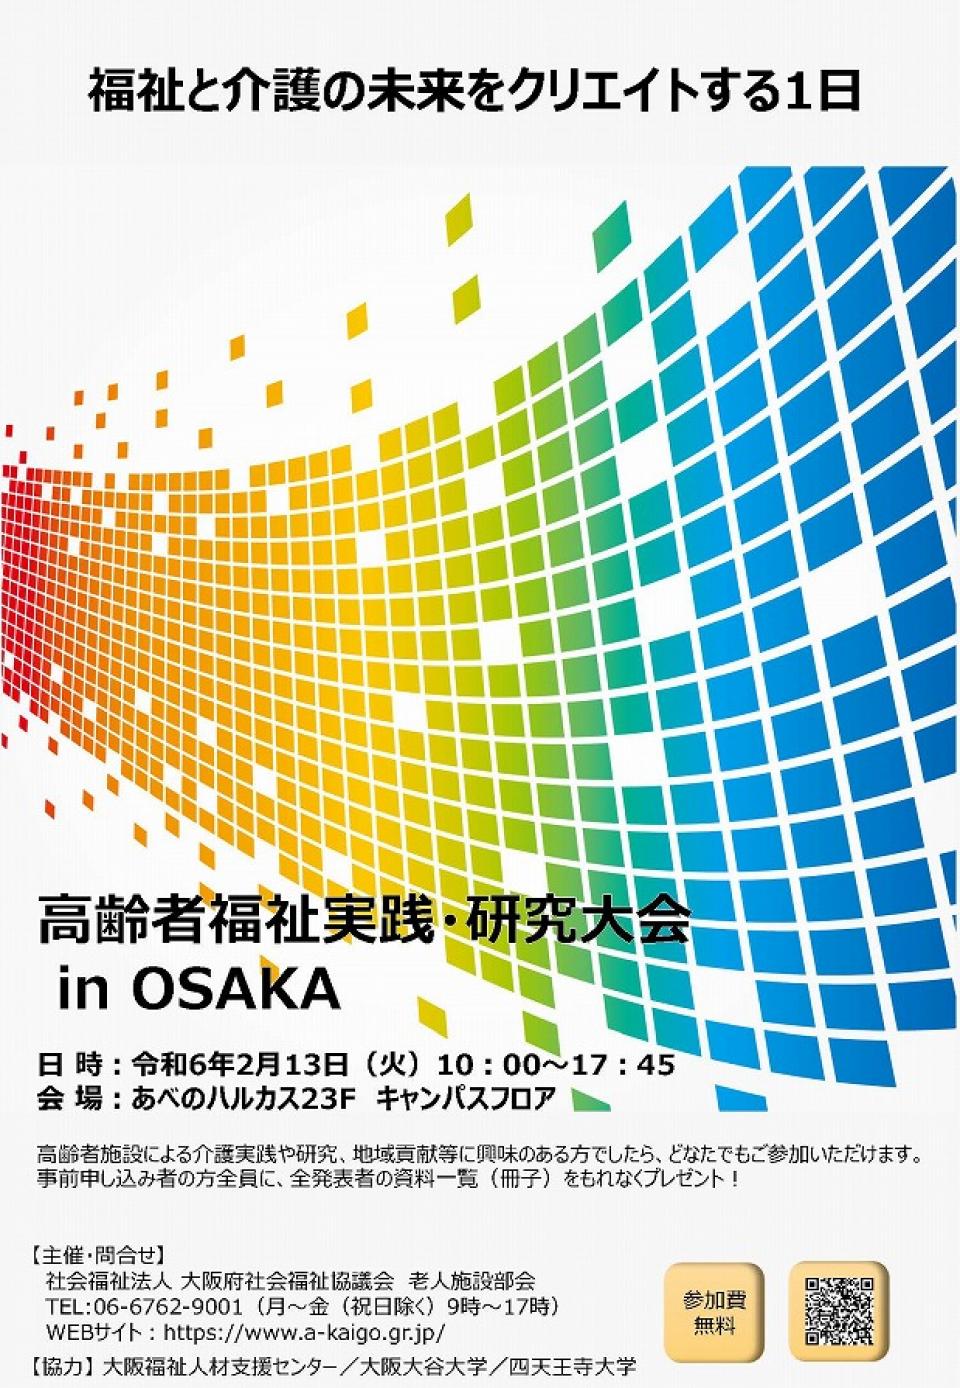 『高齢者福祉実践・研究大会in OSAKA』